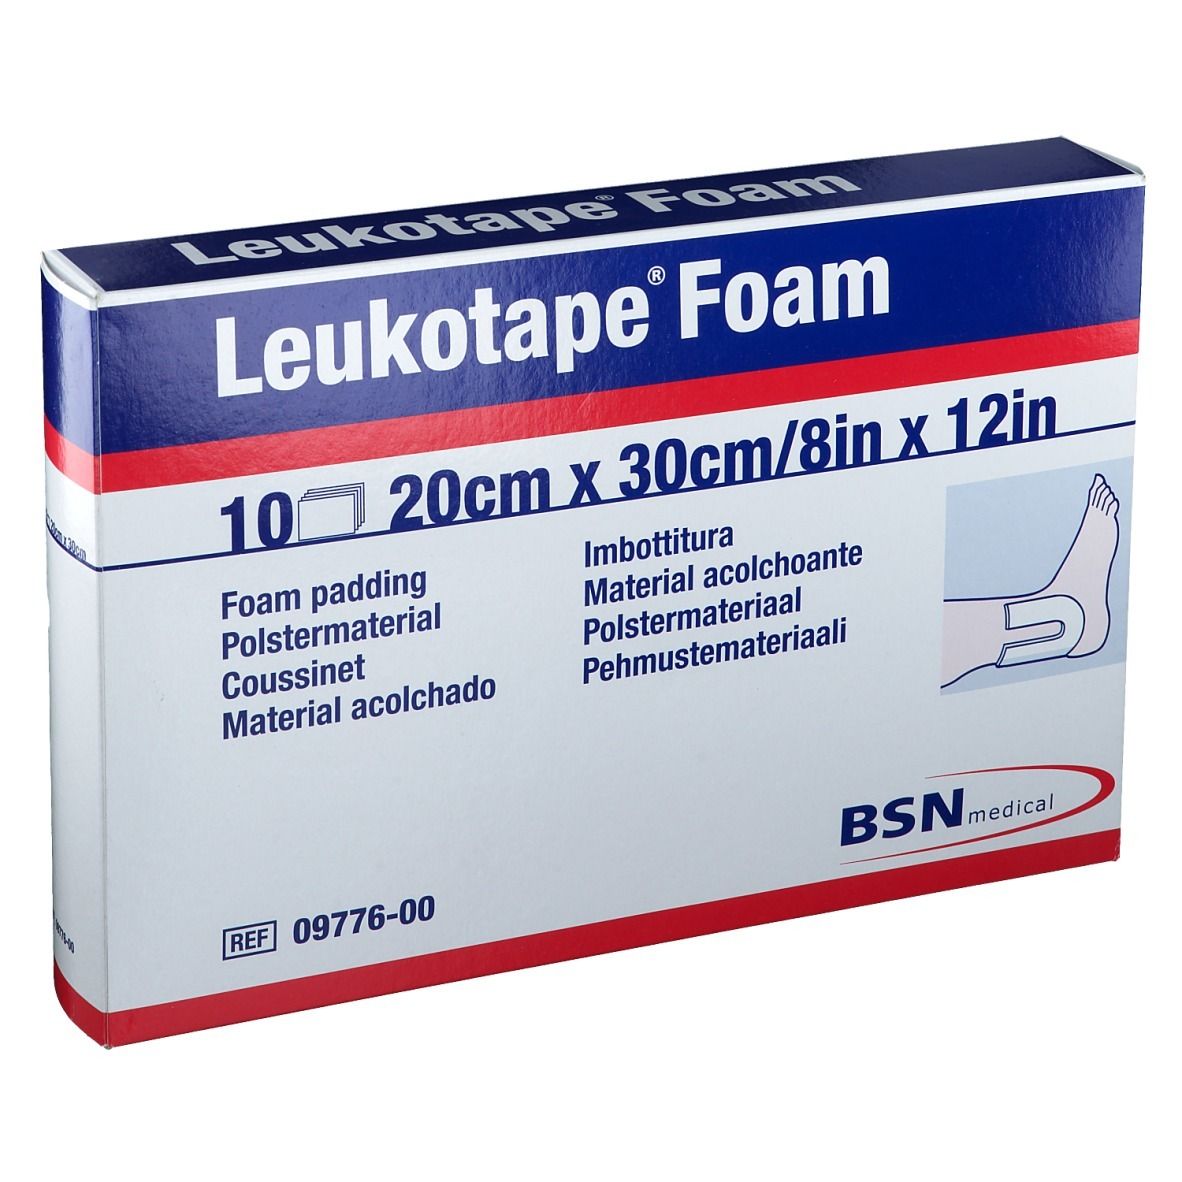 Leukotape® Foam 20 cm x 30 cm